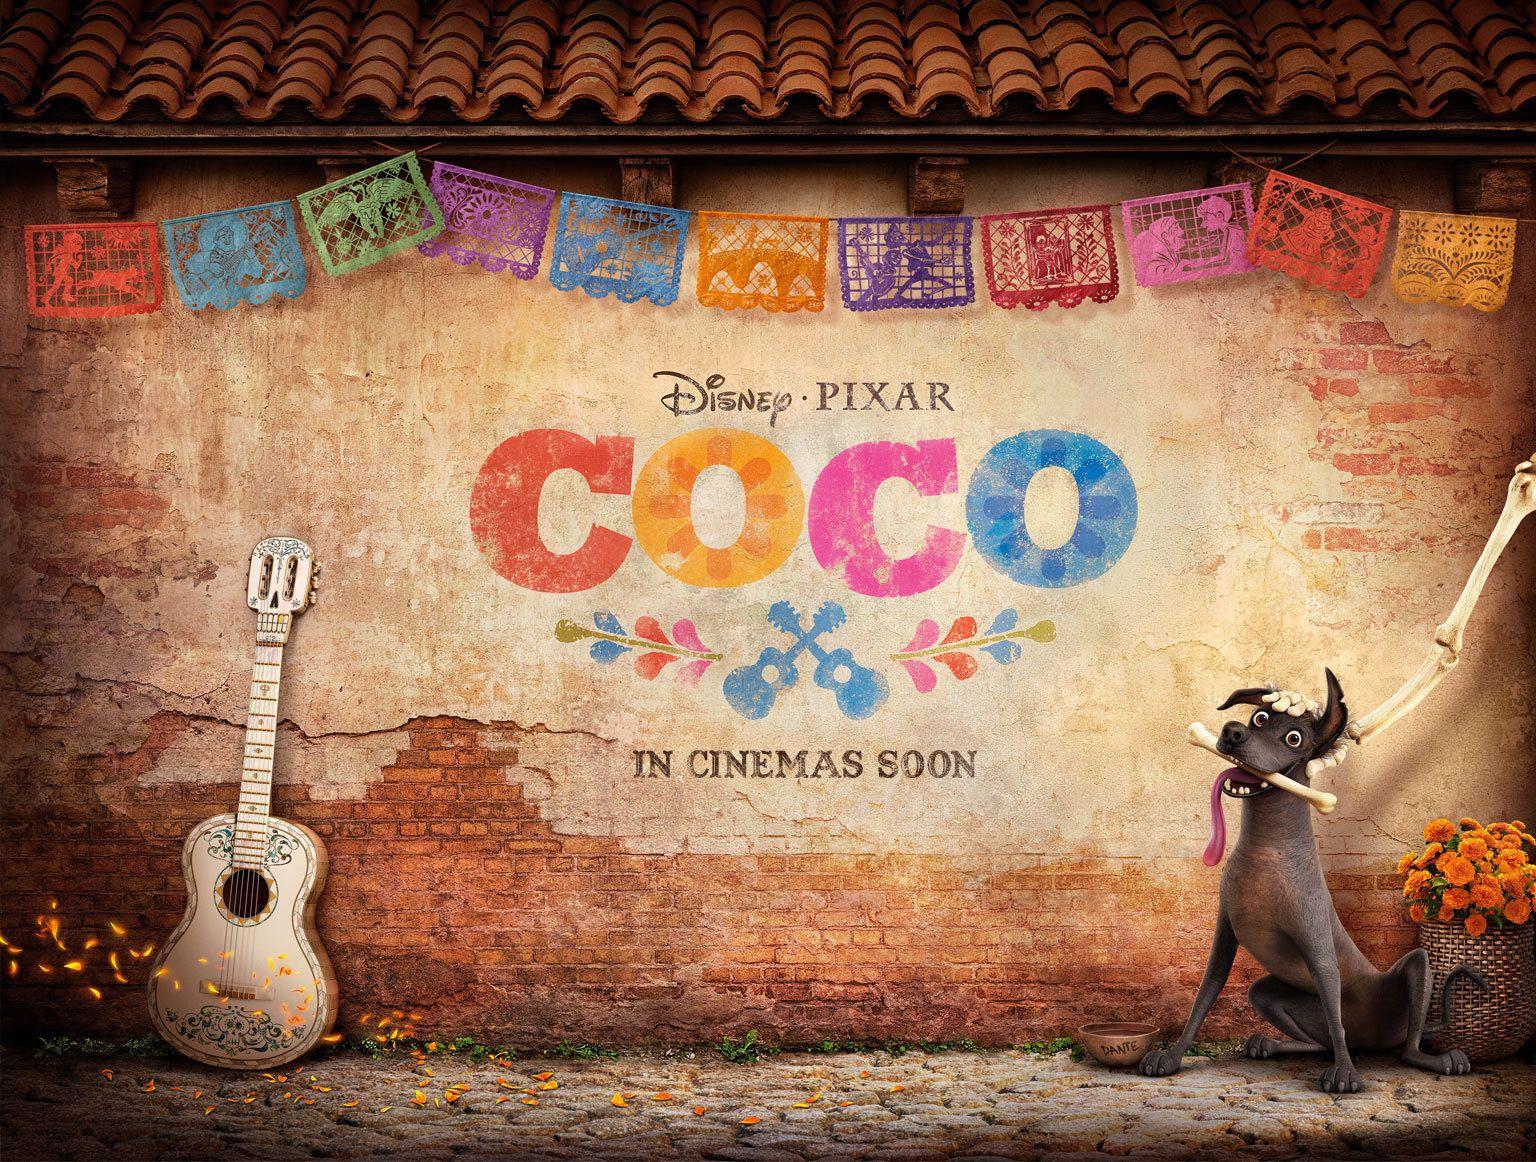 Estreno de Coco, Disney Pixar. El Blog de Yus